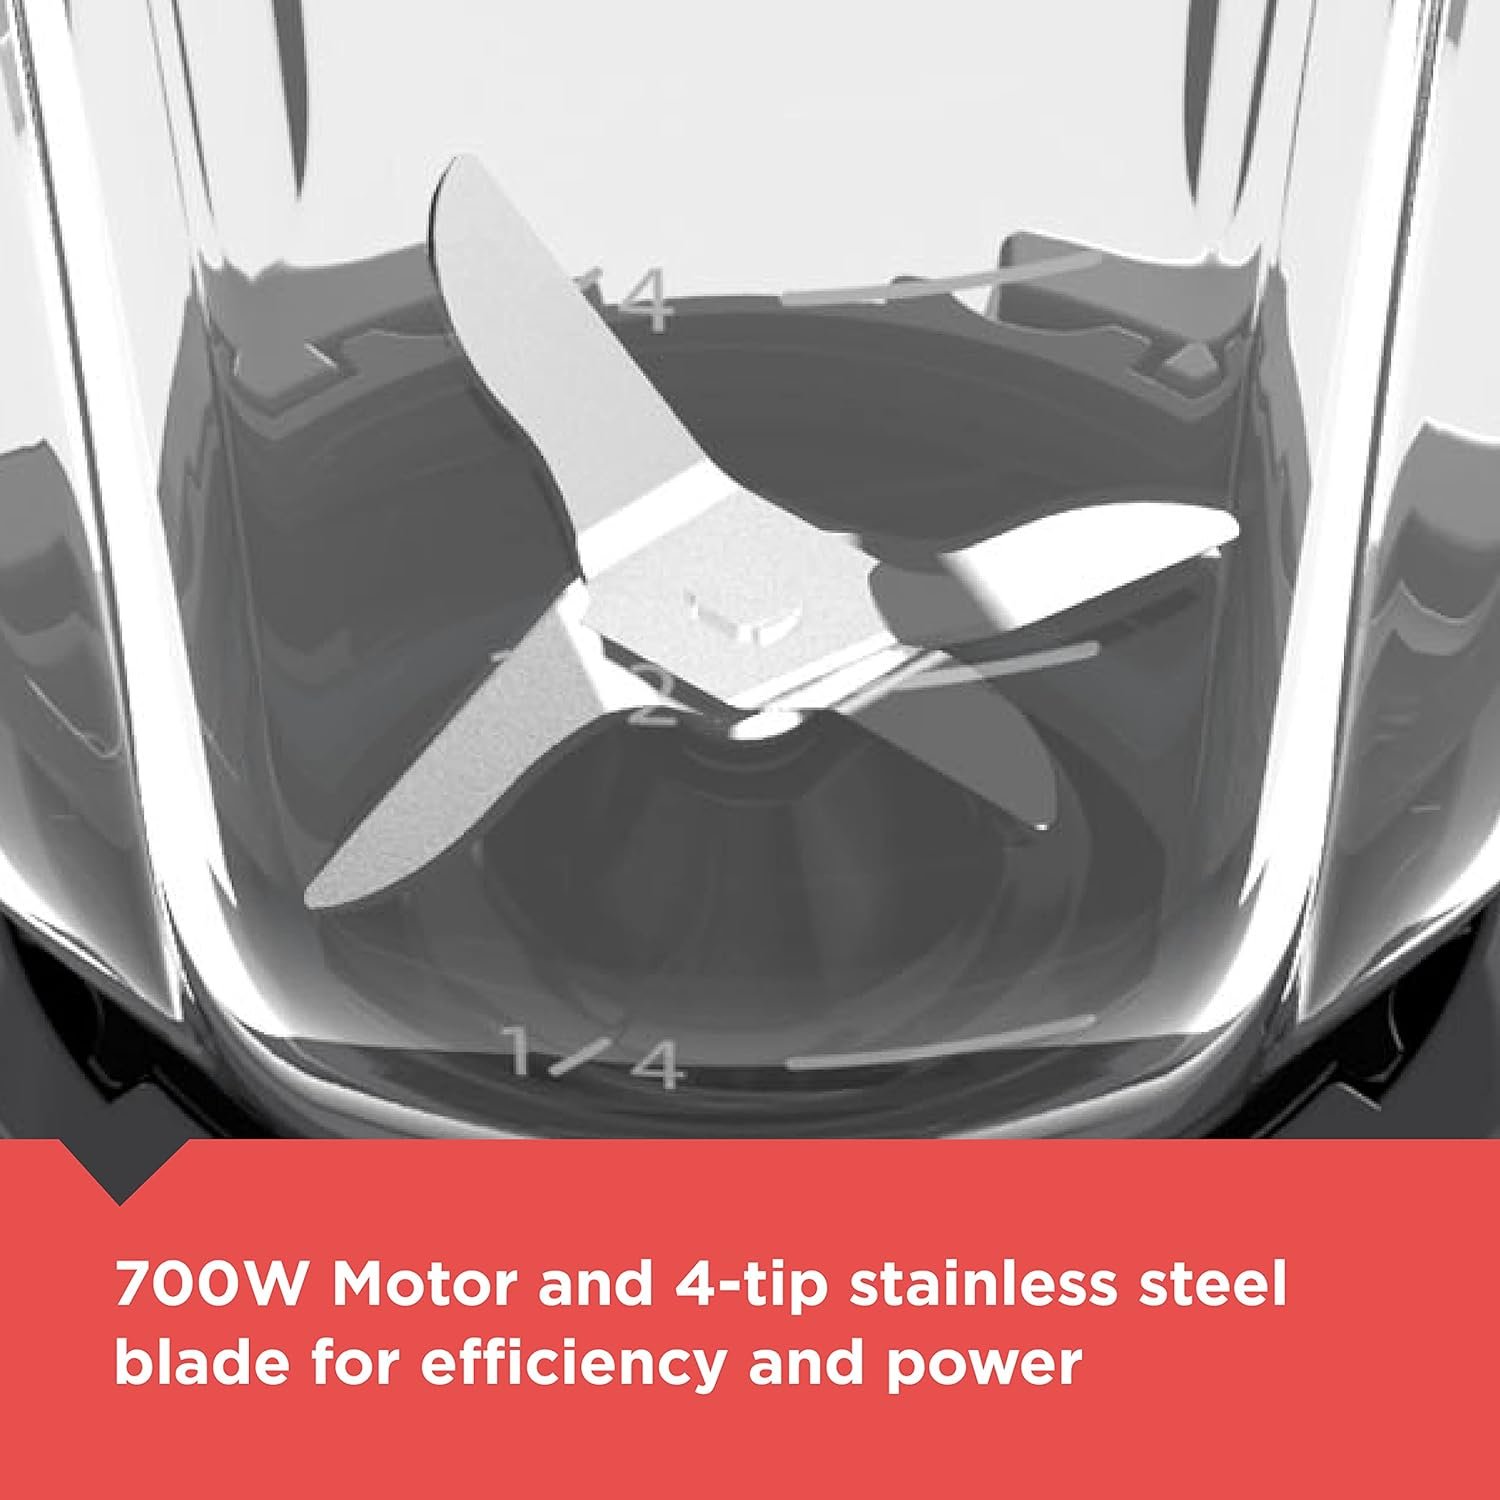 BLACK+DECKER 4-Tip Stainless Steel Blade Countertop Blender, 10 Speeds, Dishwasher-Safe, 700 Wats